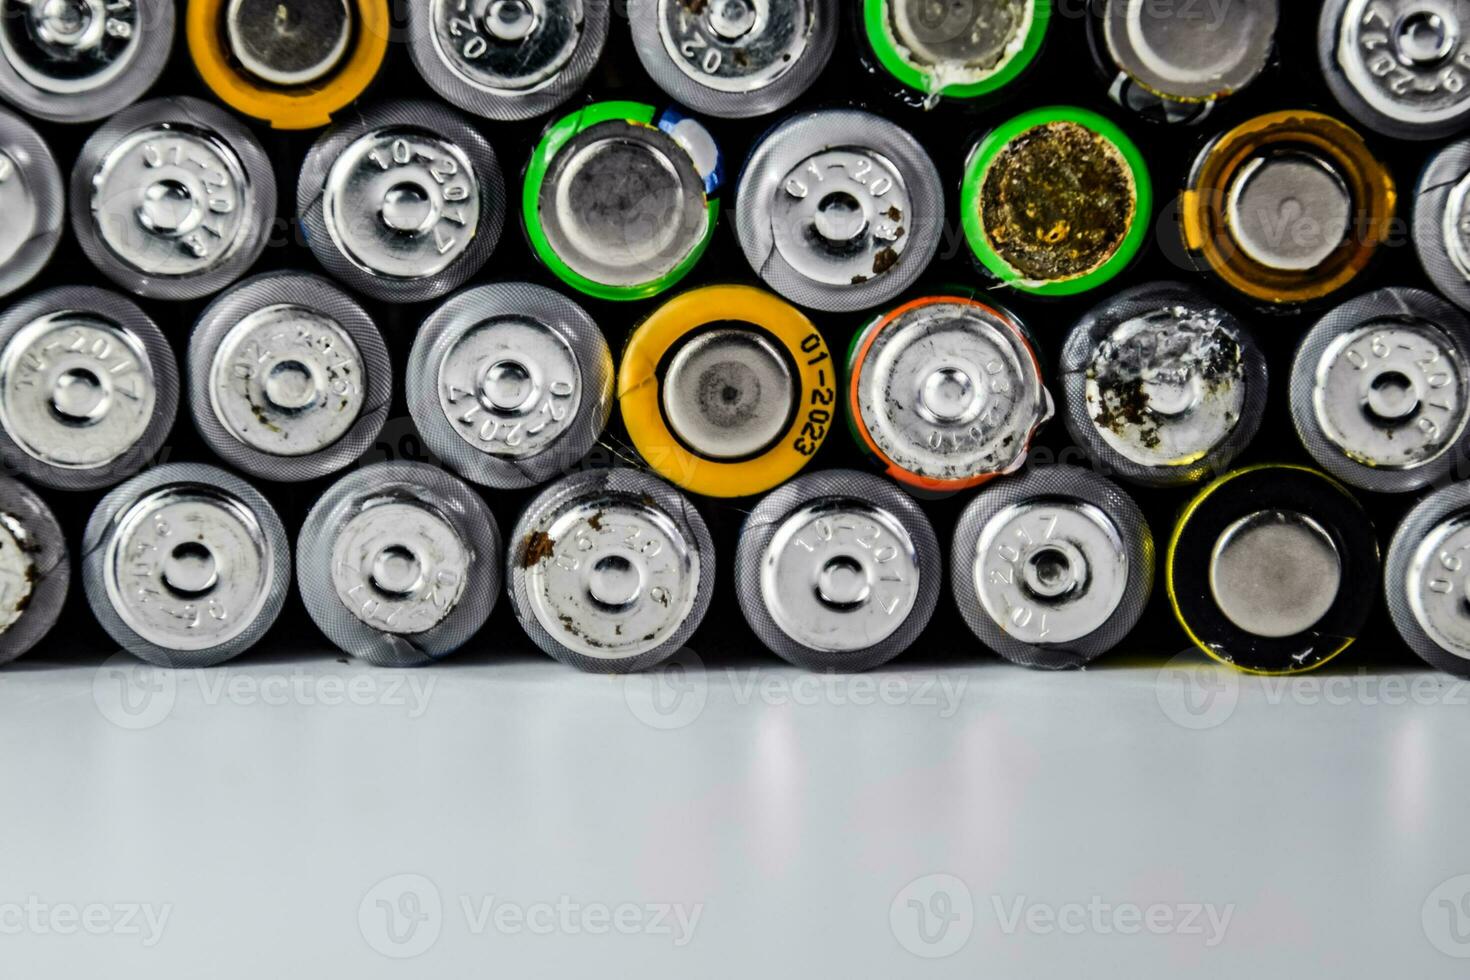 sal y alcalino baterias, fuente de energía para portátil tecnología. aaa y Automóvil club británico baterías foto